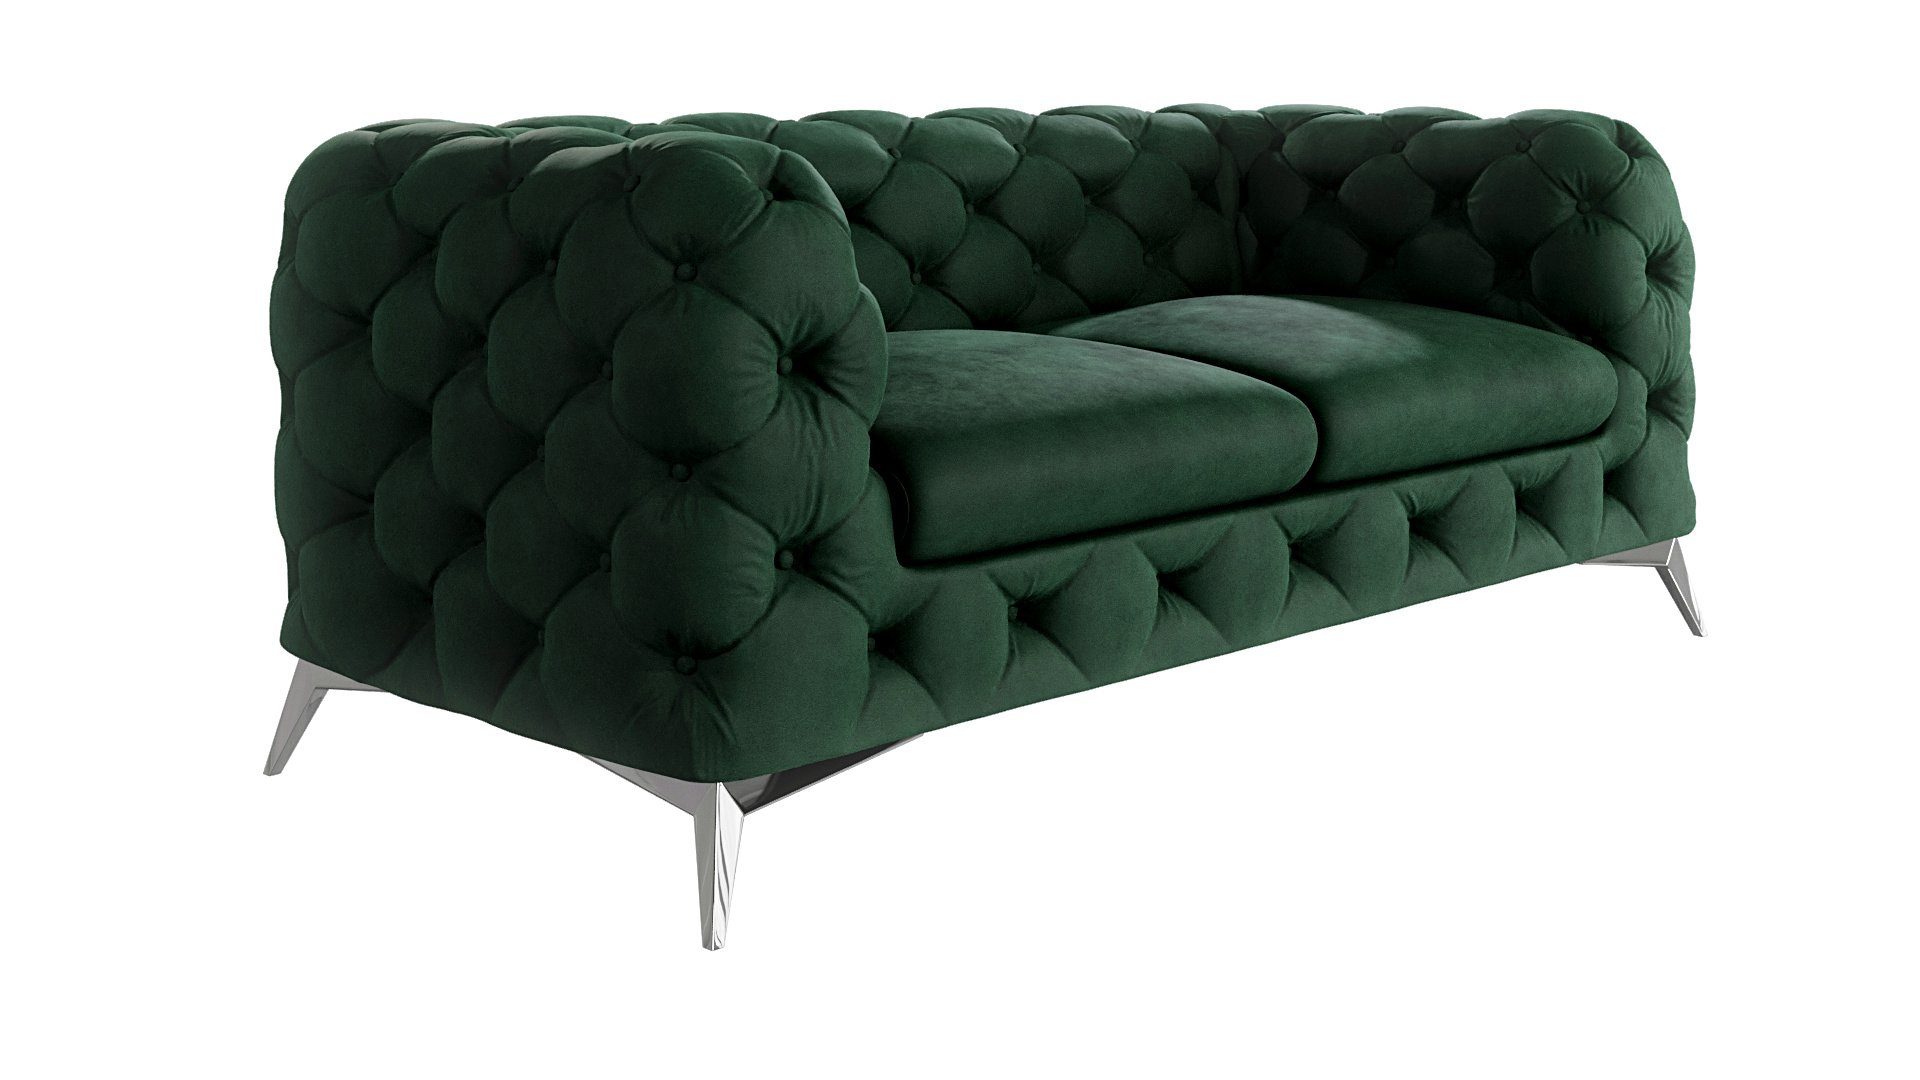 S-Style Möbel 2-Sitzer Chesterfield Sofa Kalina mit Silber Metall Füßen, mit Wellenfederung Flasche Grün